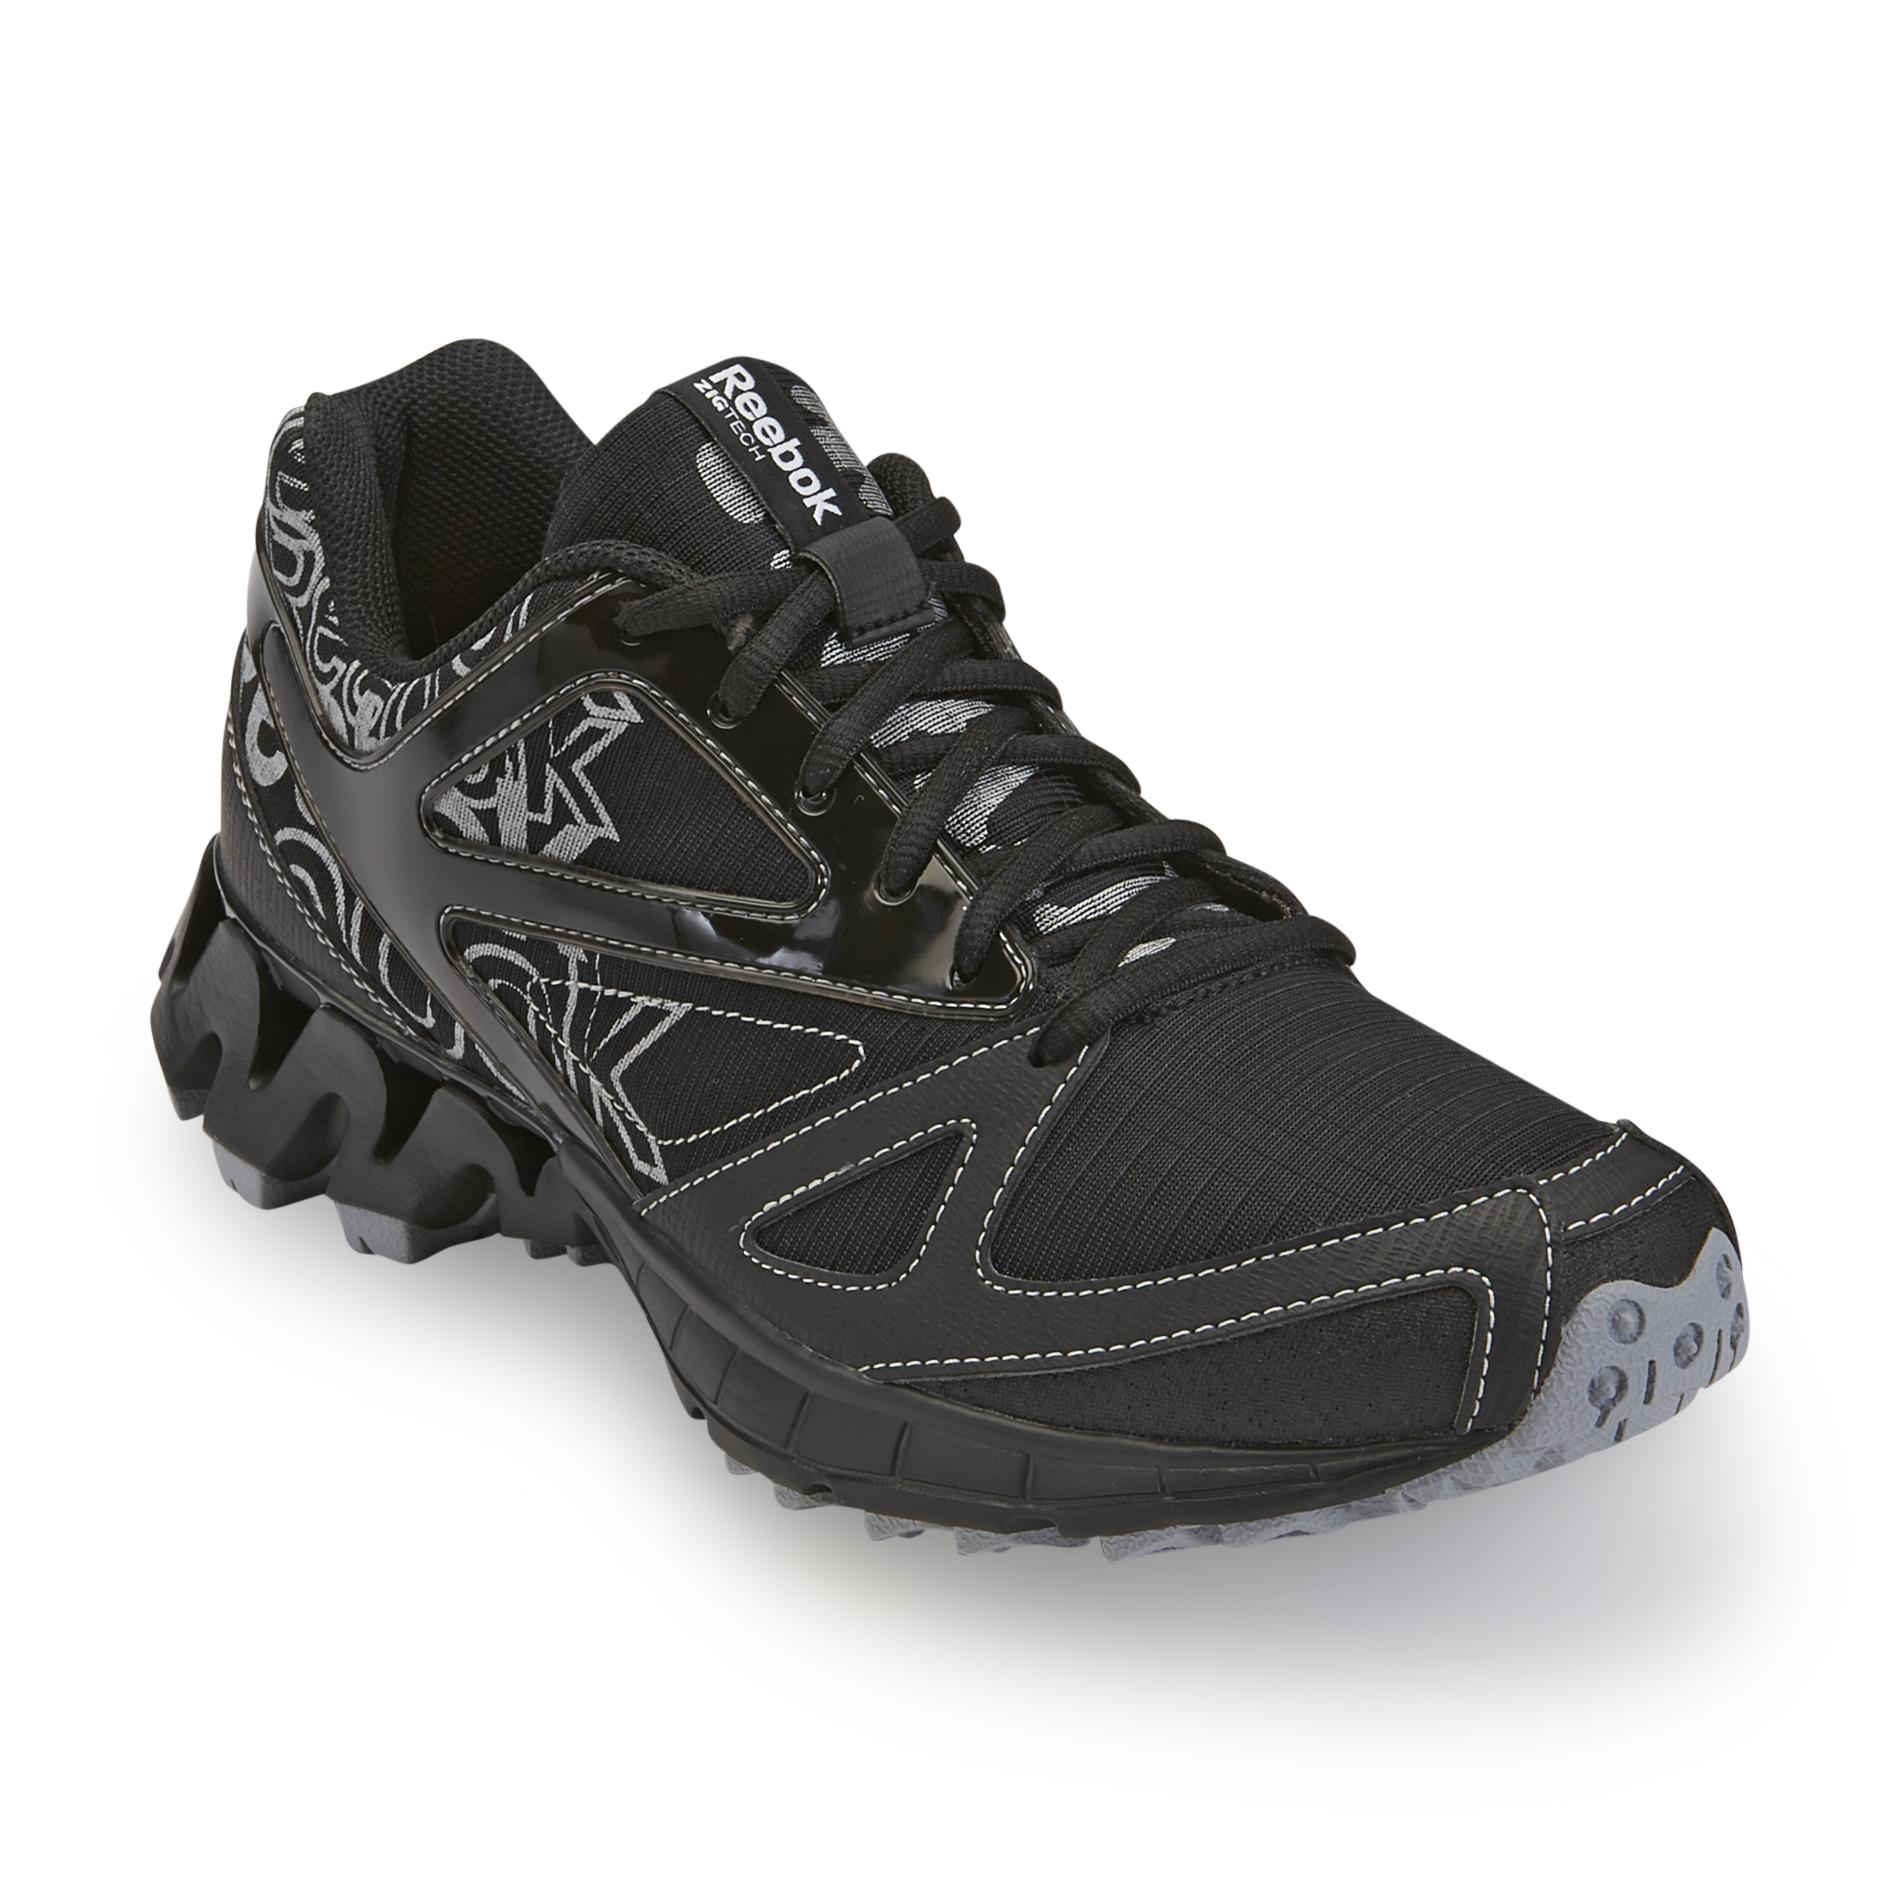 Reebok Men's Zigkick Trail 1.0 Black/Silver Running Shoes